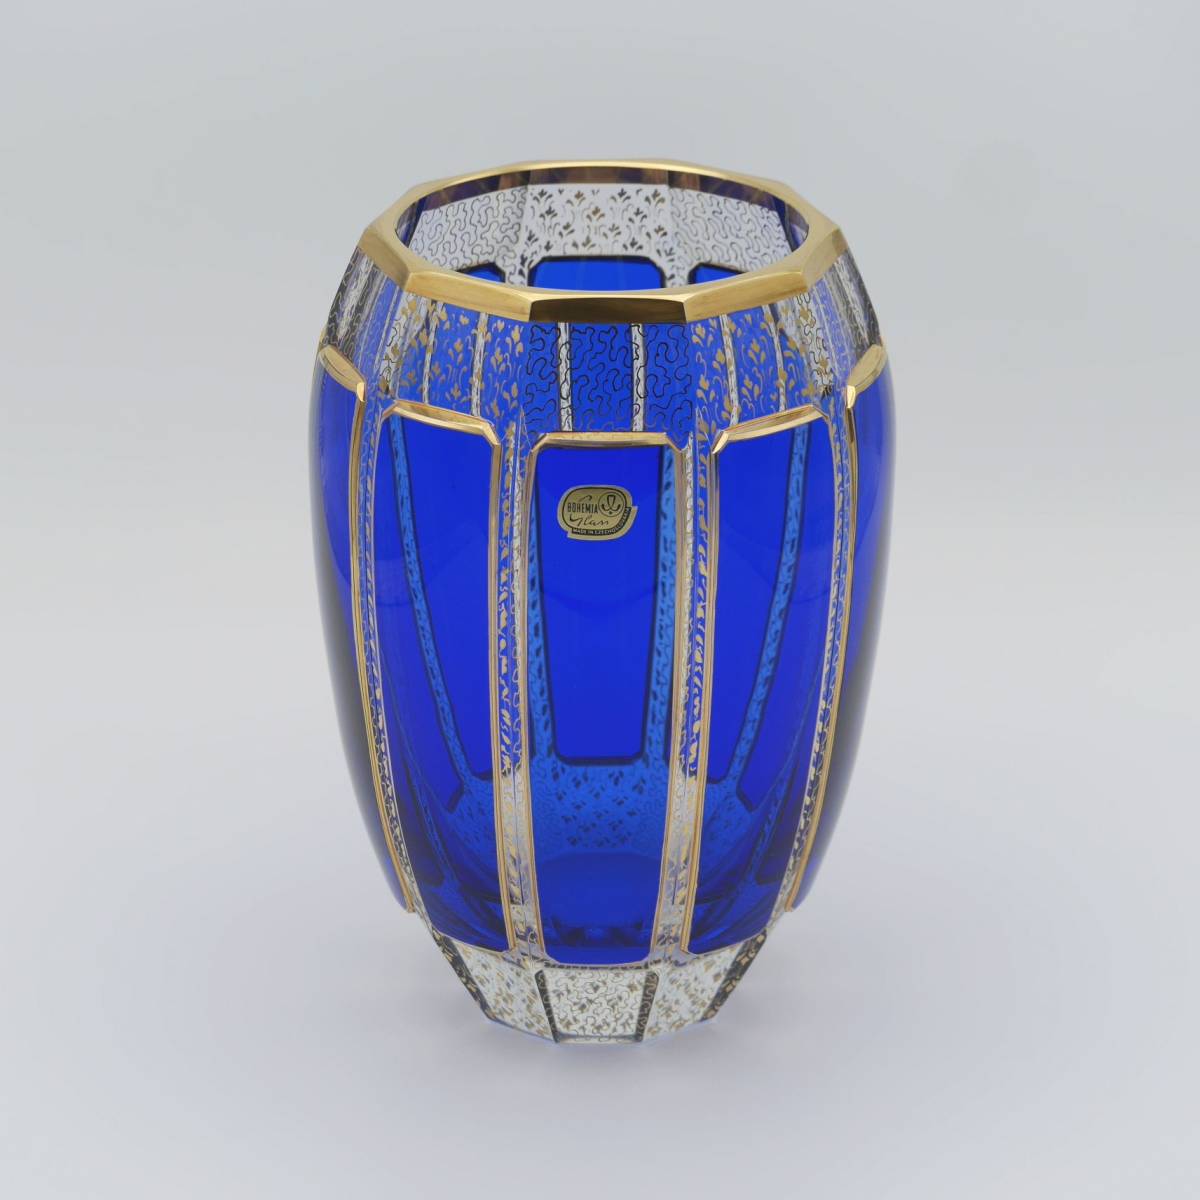 ボヘミアン ブルーパネルガラス金彩花瓶 Blue Panel Glass Vase with